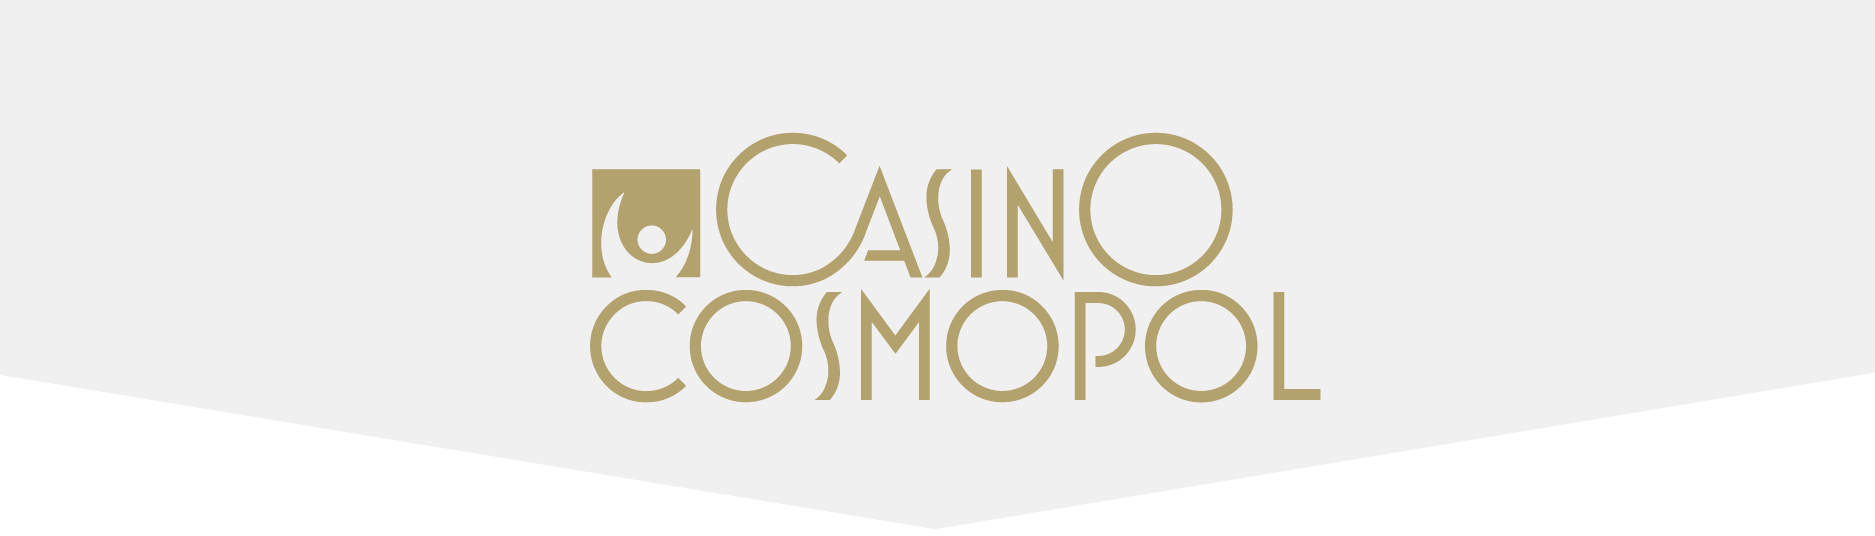 Casino Cosmopol stänger ner i Malmö och Göteborg